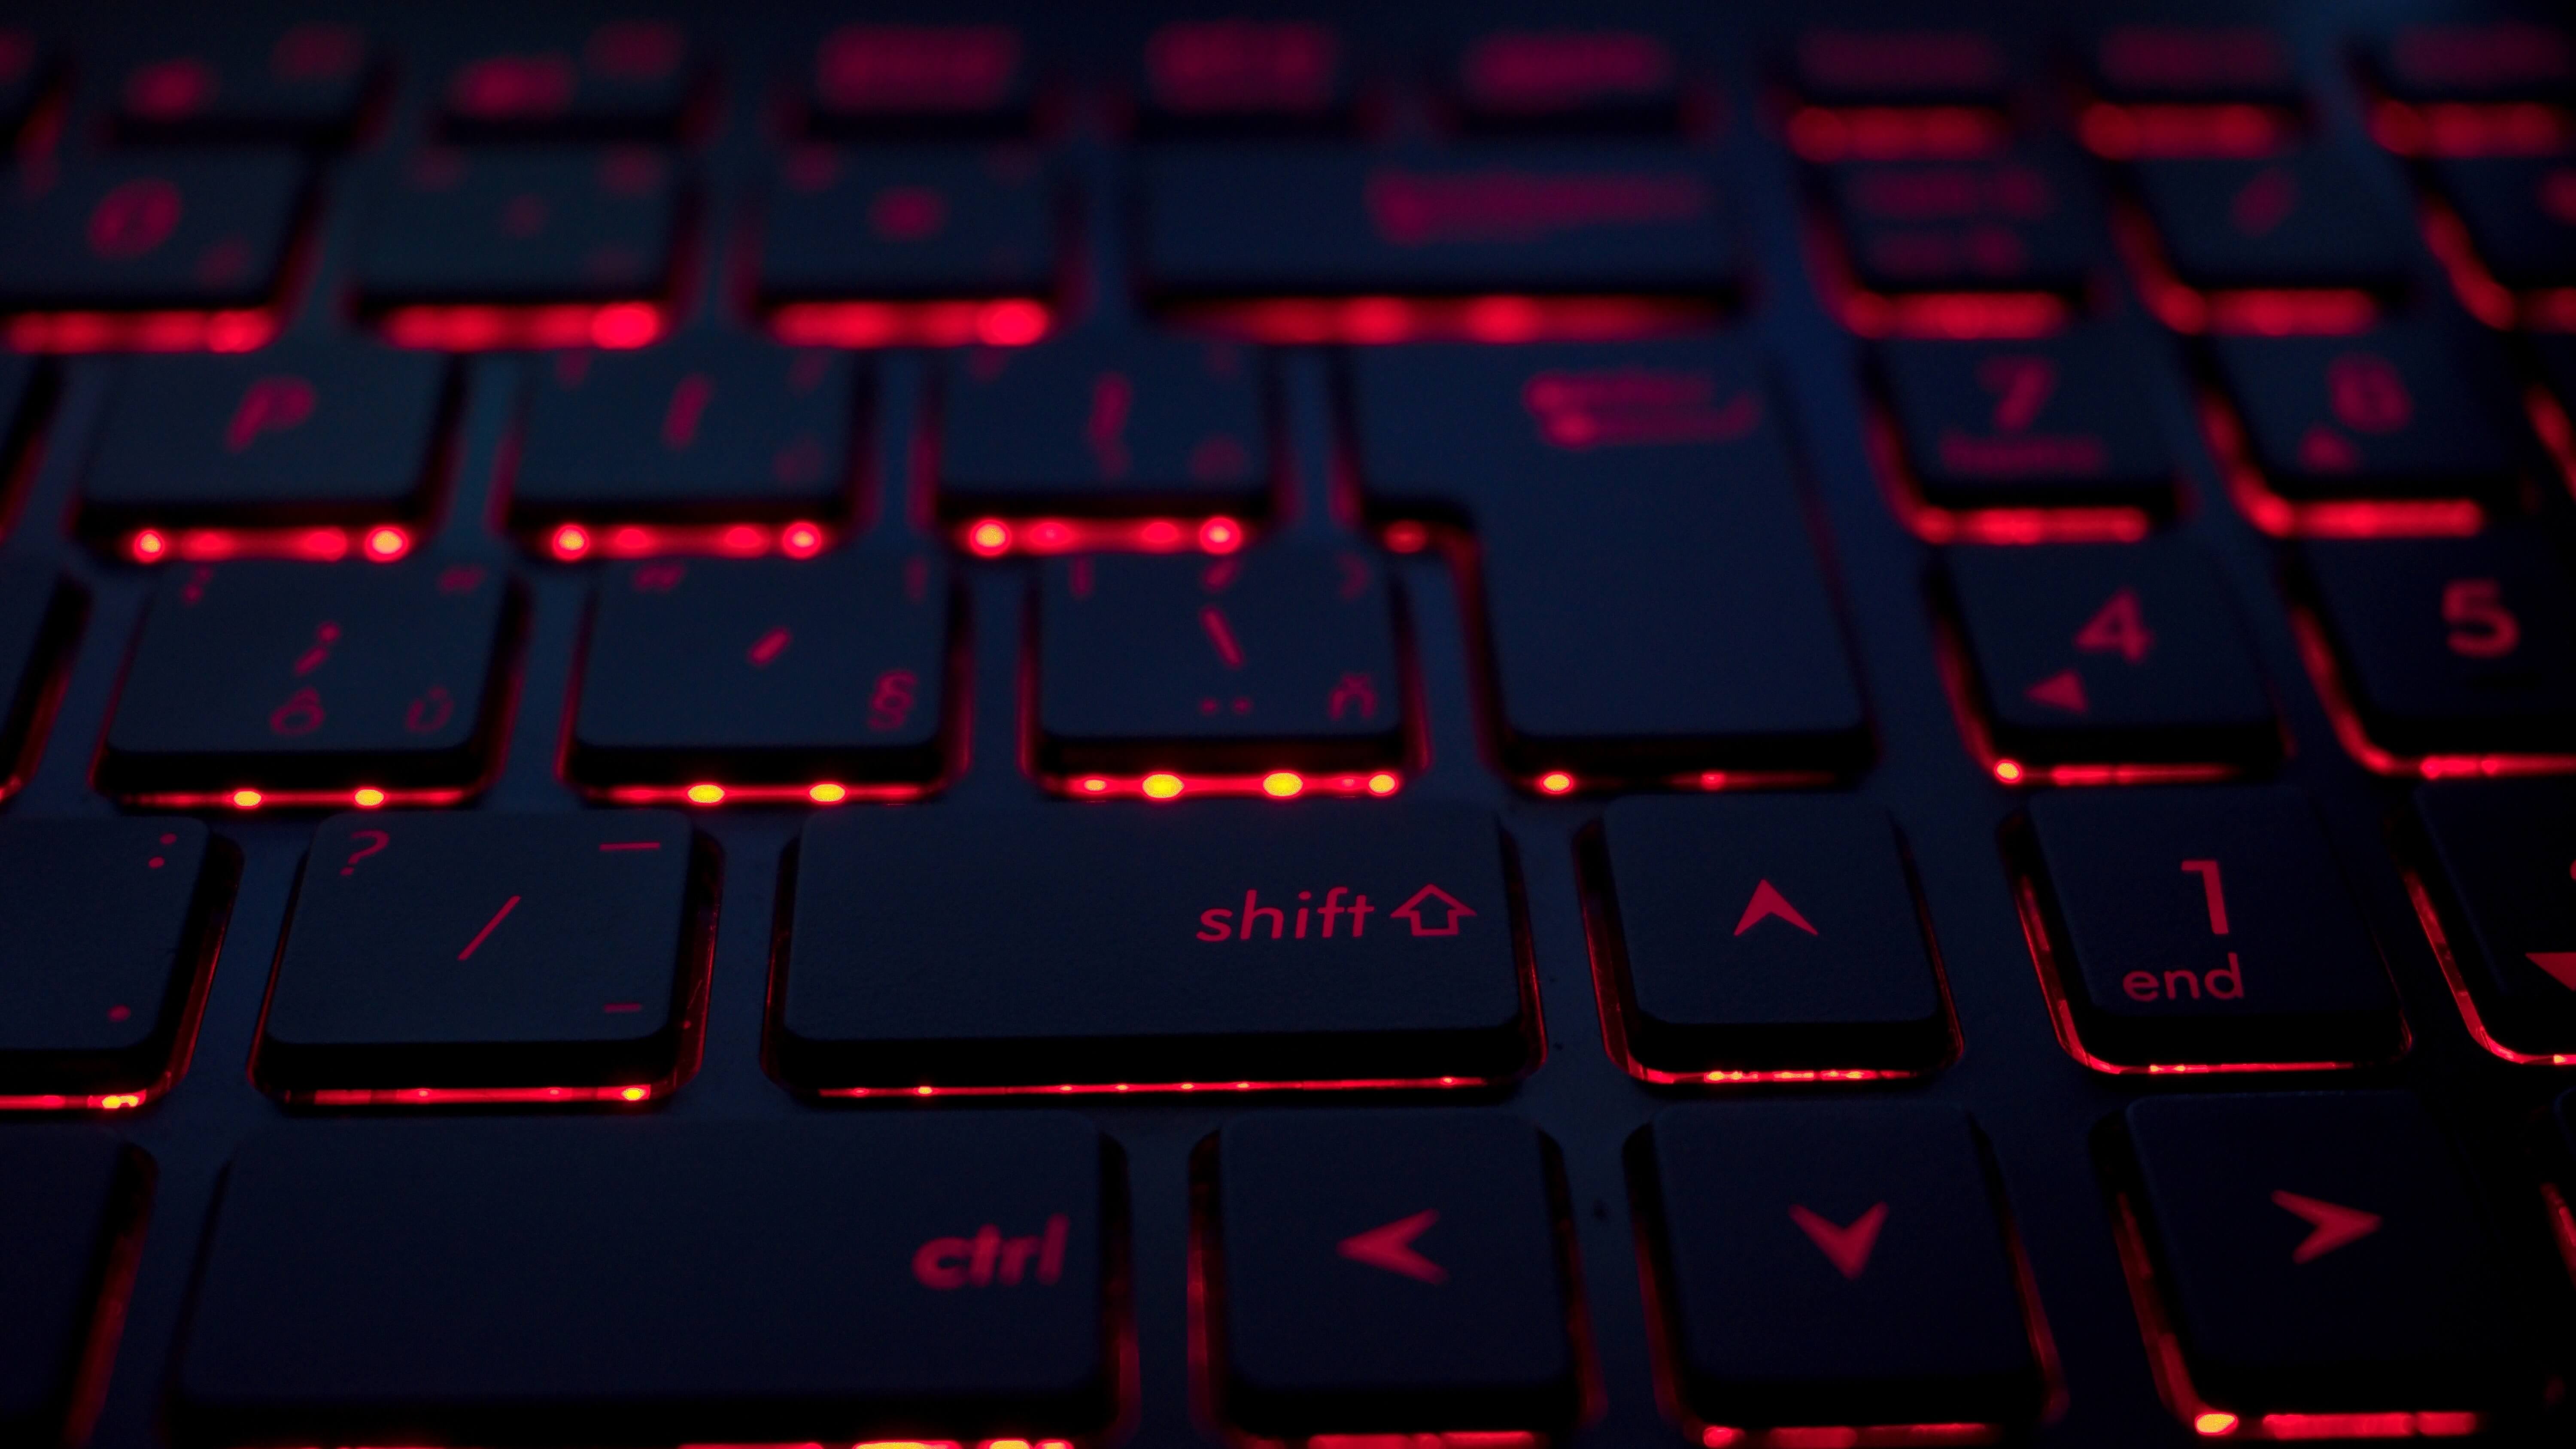 keyboard in red backlight